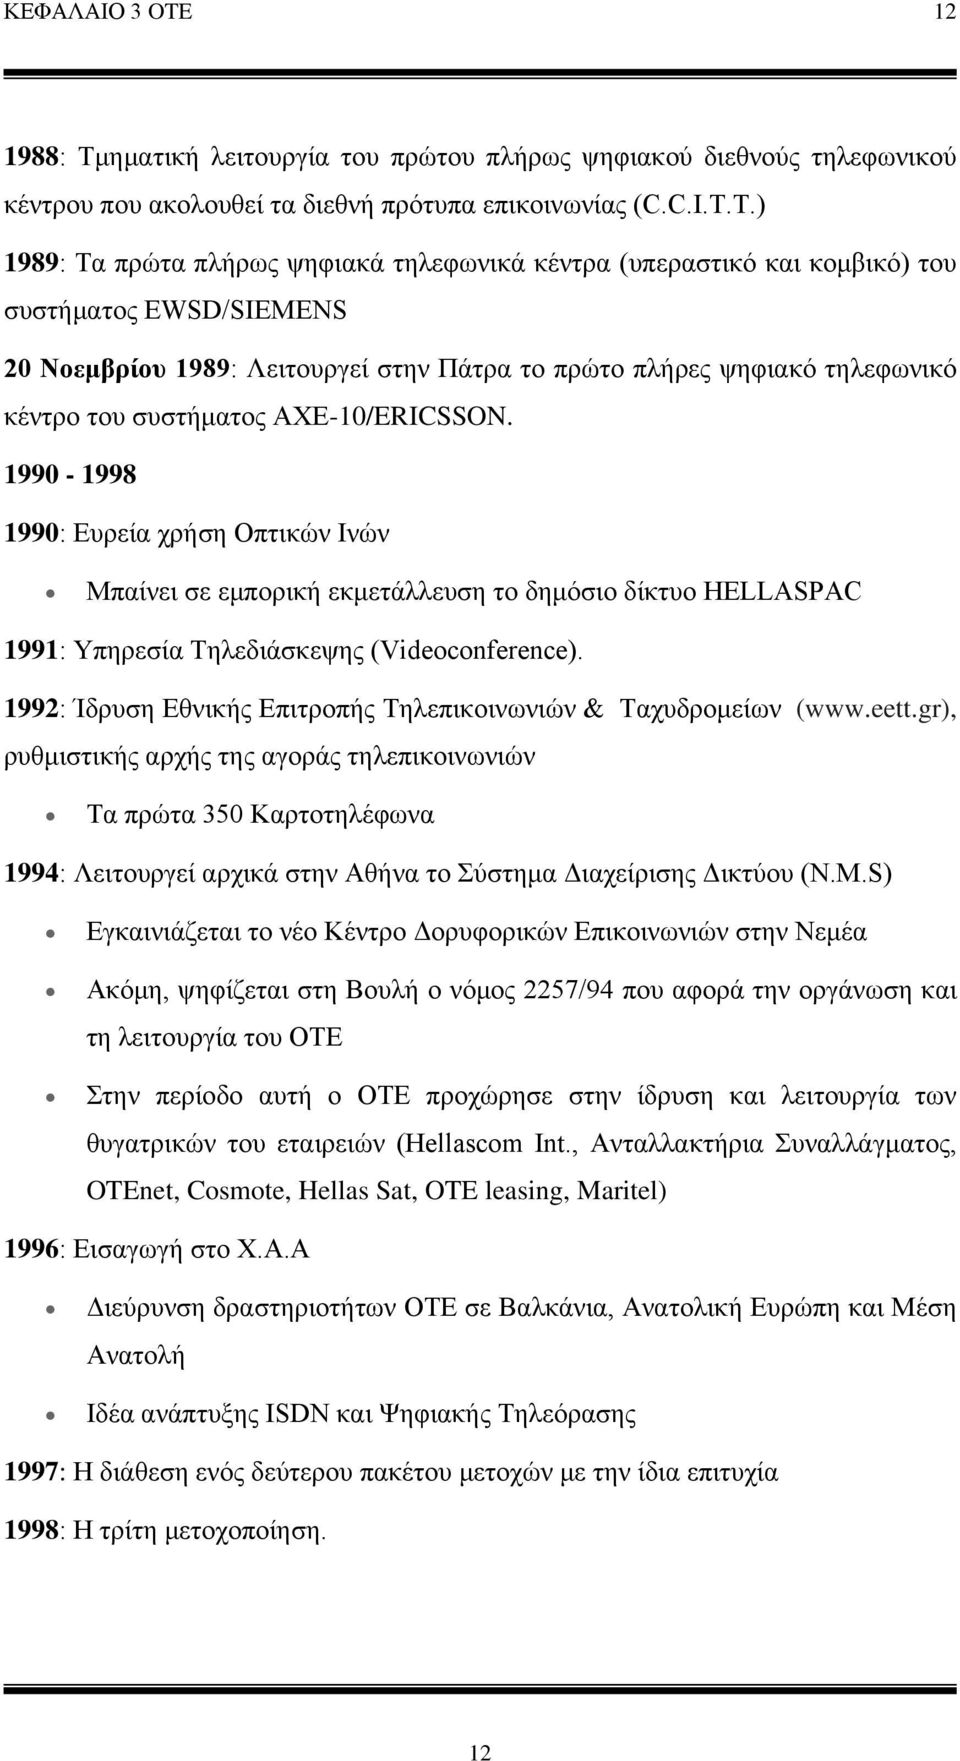 T.) 1989: Τα πρώτα πλήρως ψηφιακά τηλεφωνικά κέντρα (υπεραστικό και κομβικό) του συστήματος EWSD/SIEMENS 20 Νοεμβρίου 1989: Λειτουργεί στην Πάτρα το πρώτο πλήρες ψηφιακό τηλεφωνικό κέντρο του